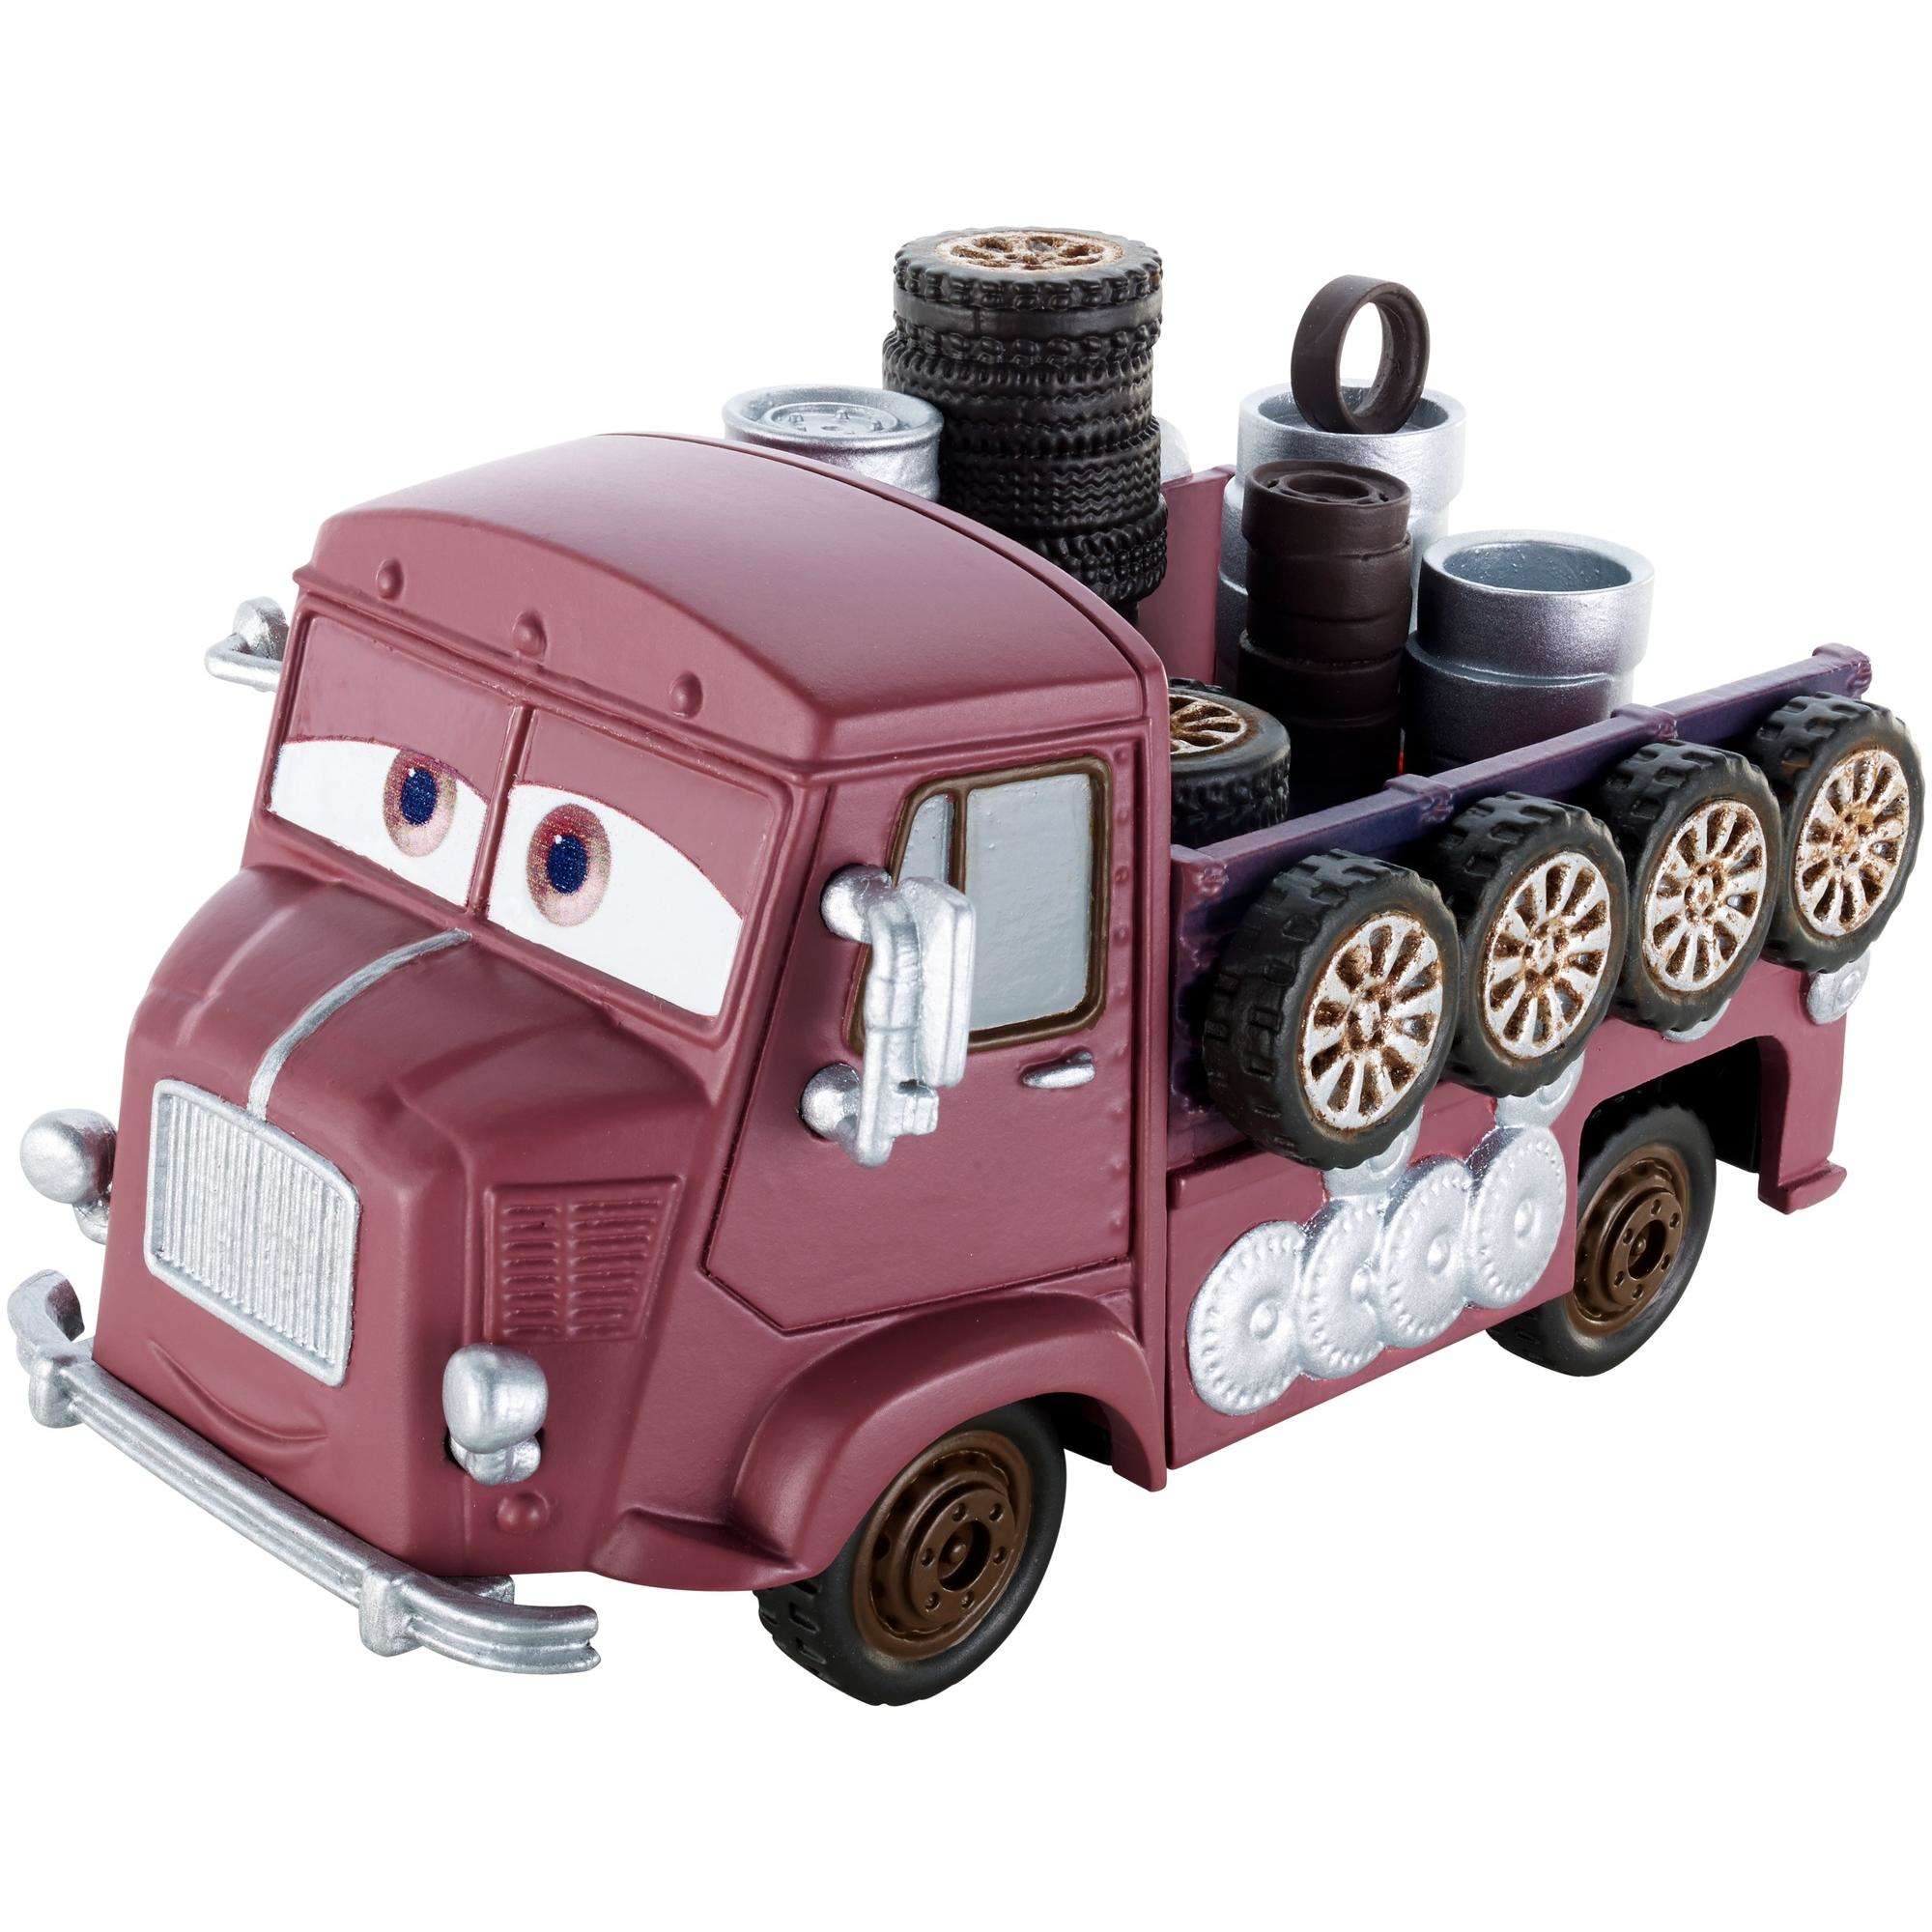 Disney/Pixar Cars Alexis Wheelson Deluxe Die-Cast Vehicle - image 1 of 4